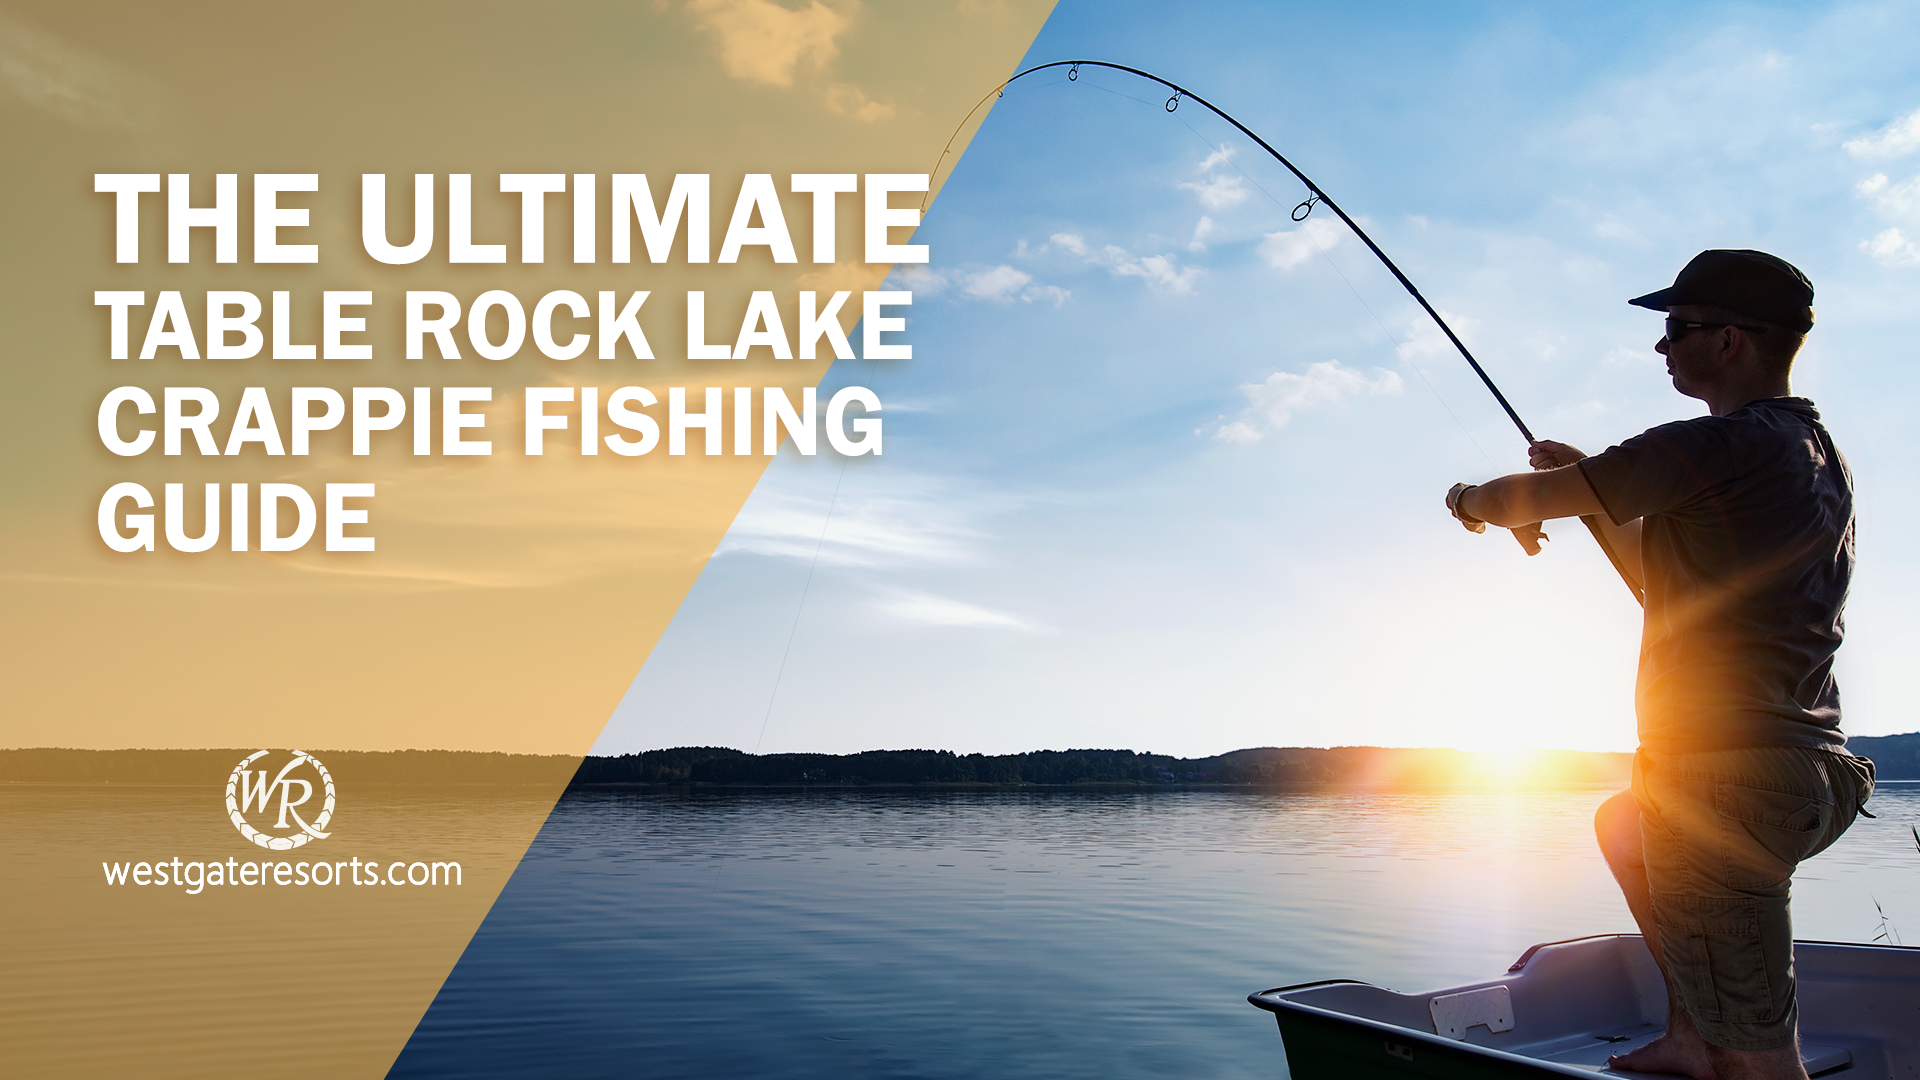 La mejor guía de pesca de Table Rock Lake Crappie | Consejos para pescar en Table Rock Lake | Resorts en Westgate